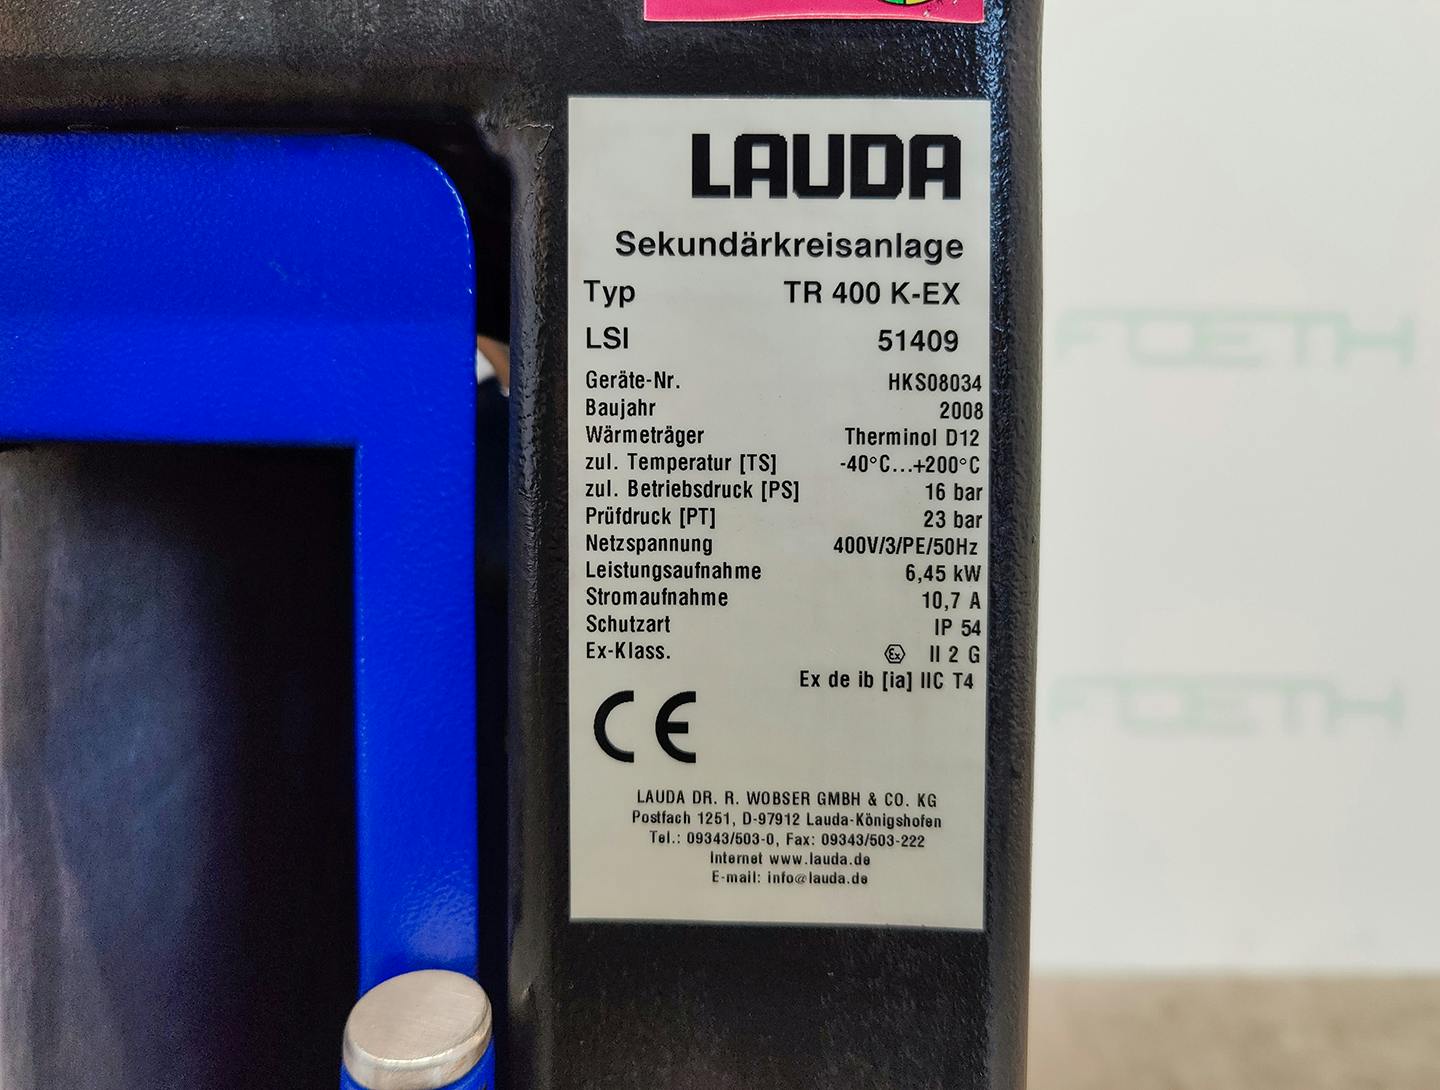 Lauda TR400 K-EX "secondary circuit system" - Temperature control unit - image 6